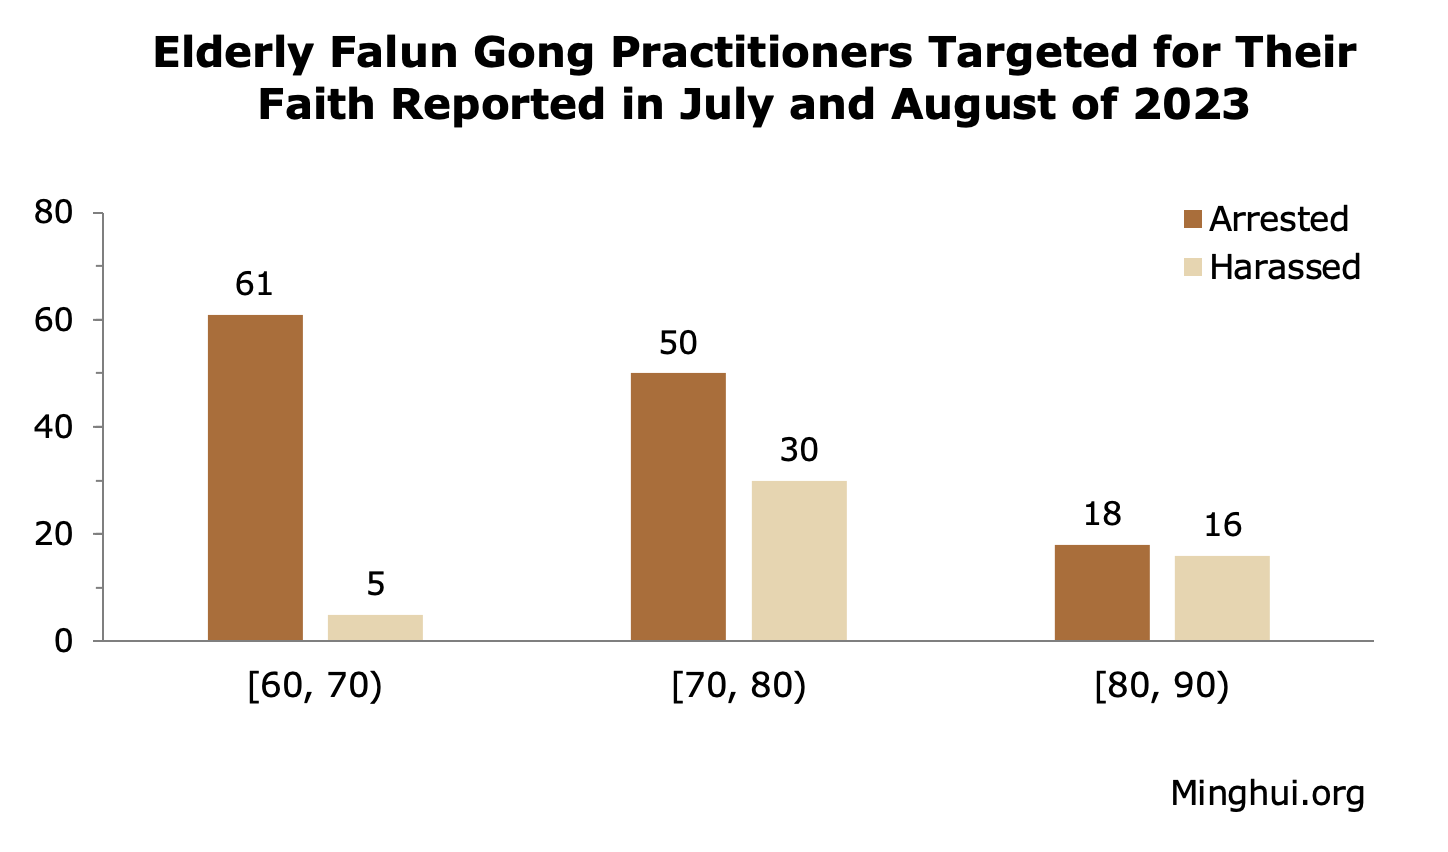 Image for article דווח ביולי ואוגוסט 2023: 1082 מתרגלי פאלון גונג נעצרו או הוטרדו בשל אמונתם